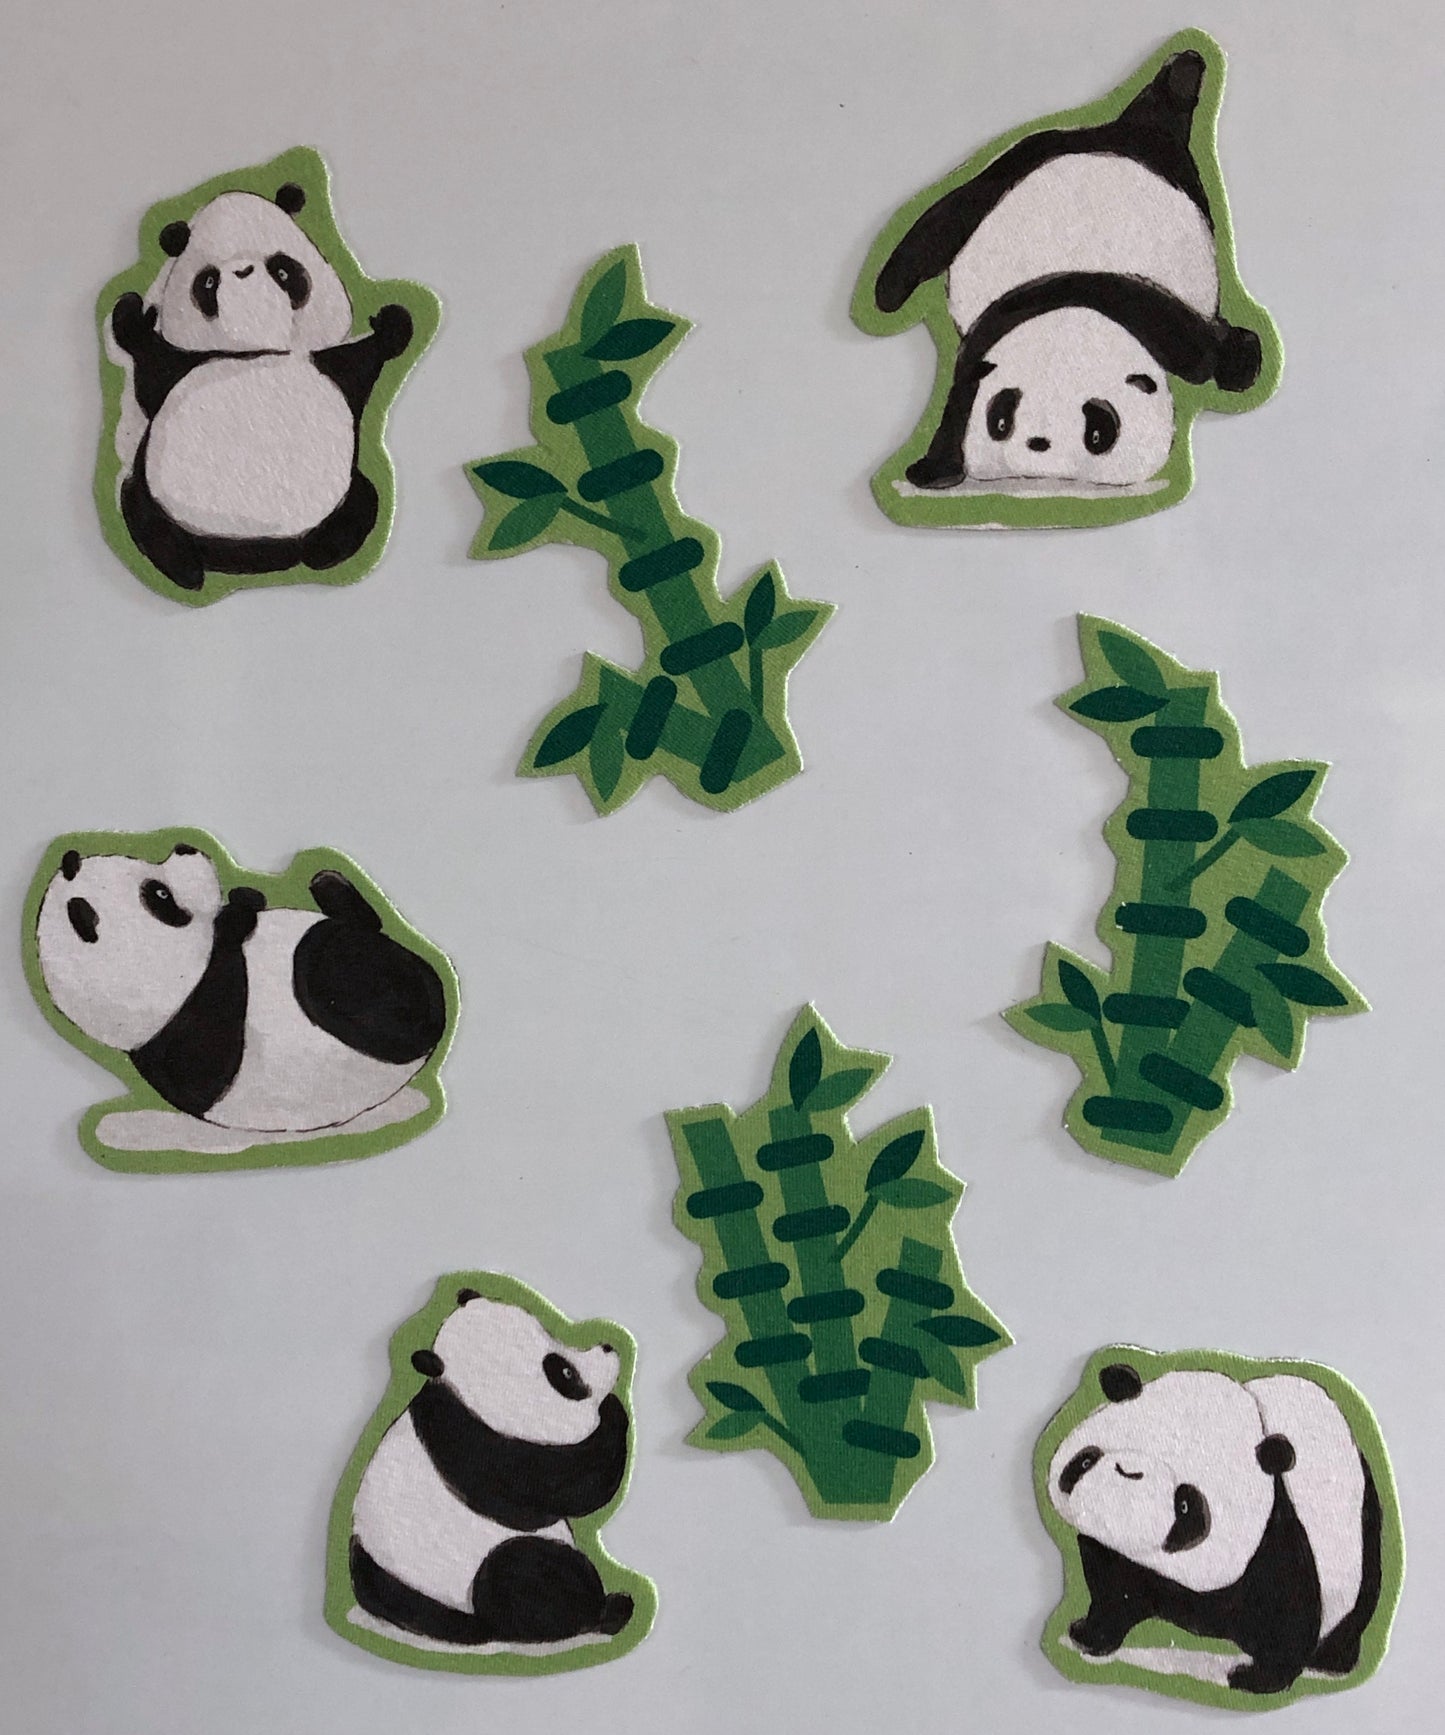 Tumbling Pandas panel